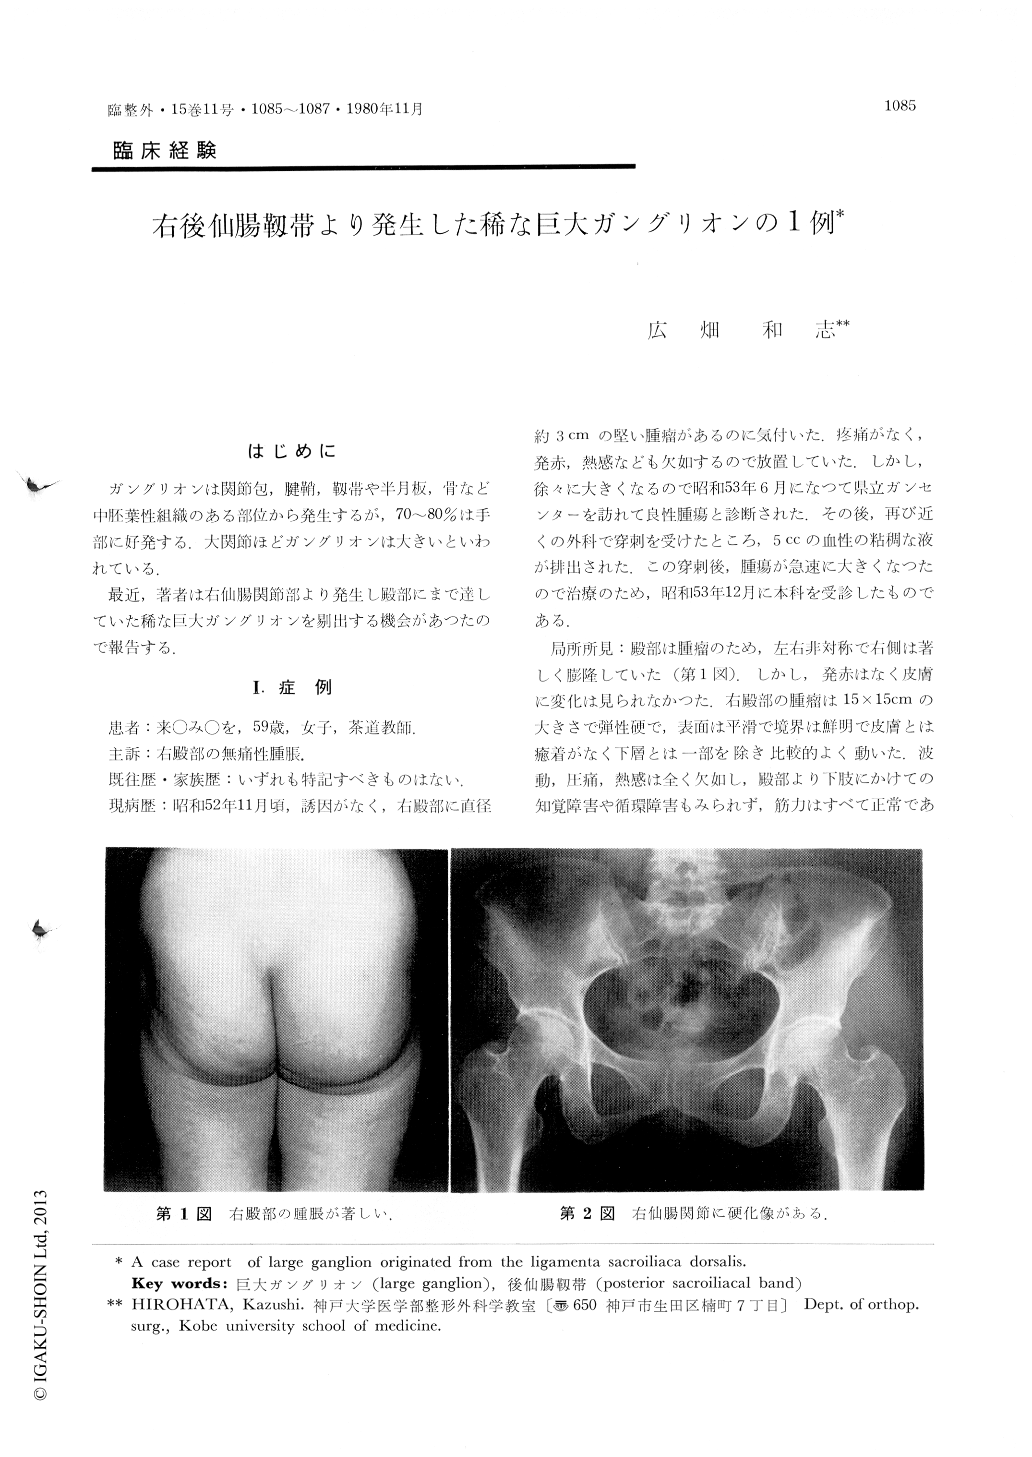 右後仙腸靱帯より発生した稀な巨大ガングリオンの1例 臨床整形外科 15巻11号 医書 Jp